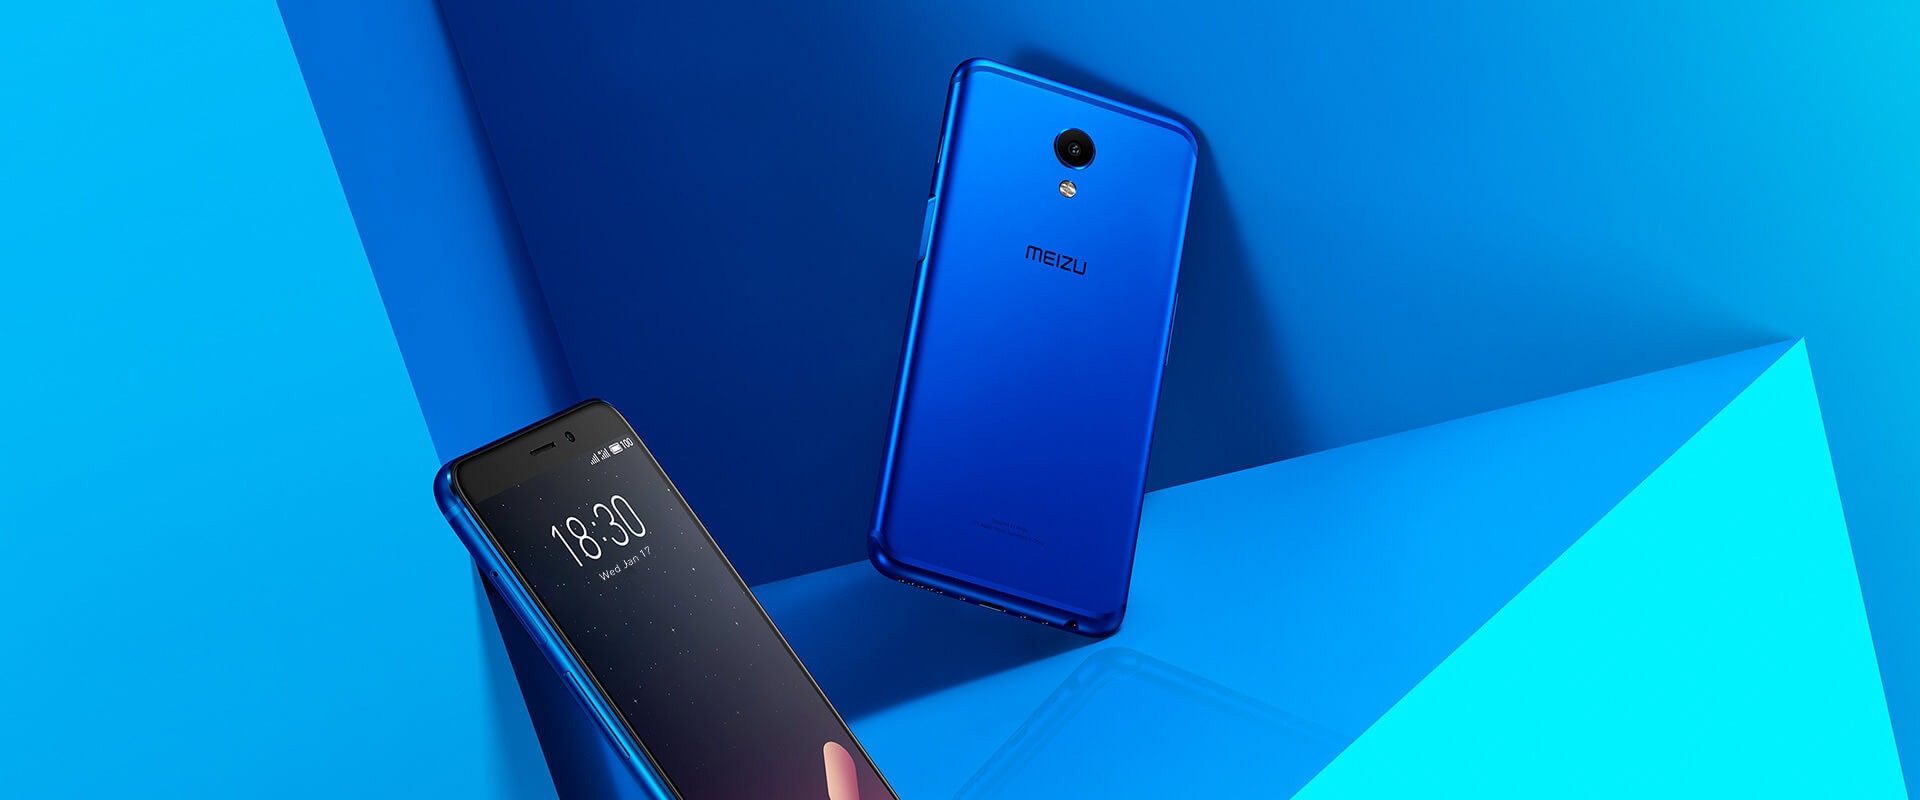 Топ 5 лучший бюджетный смартфон 2018 года - Meizu M6s